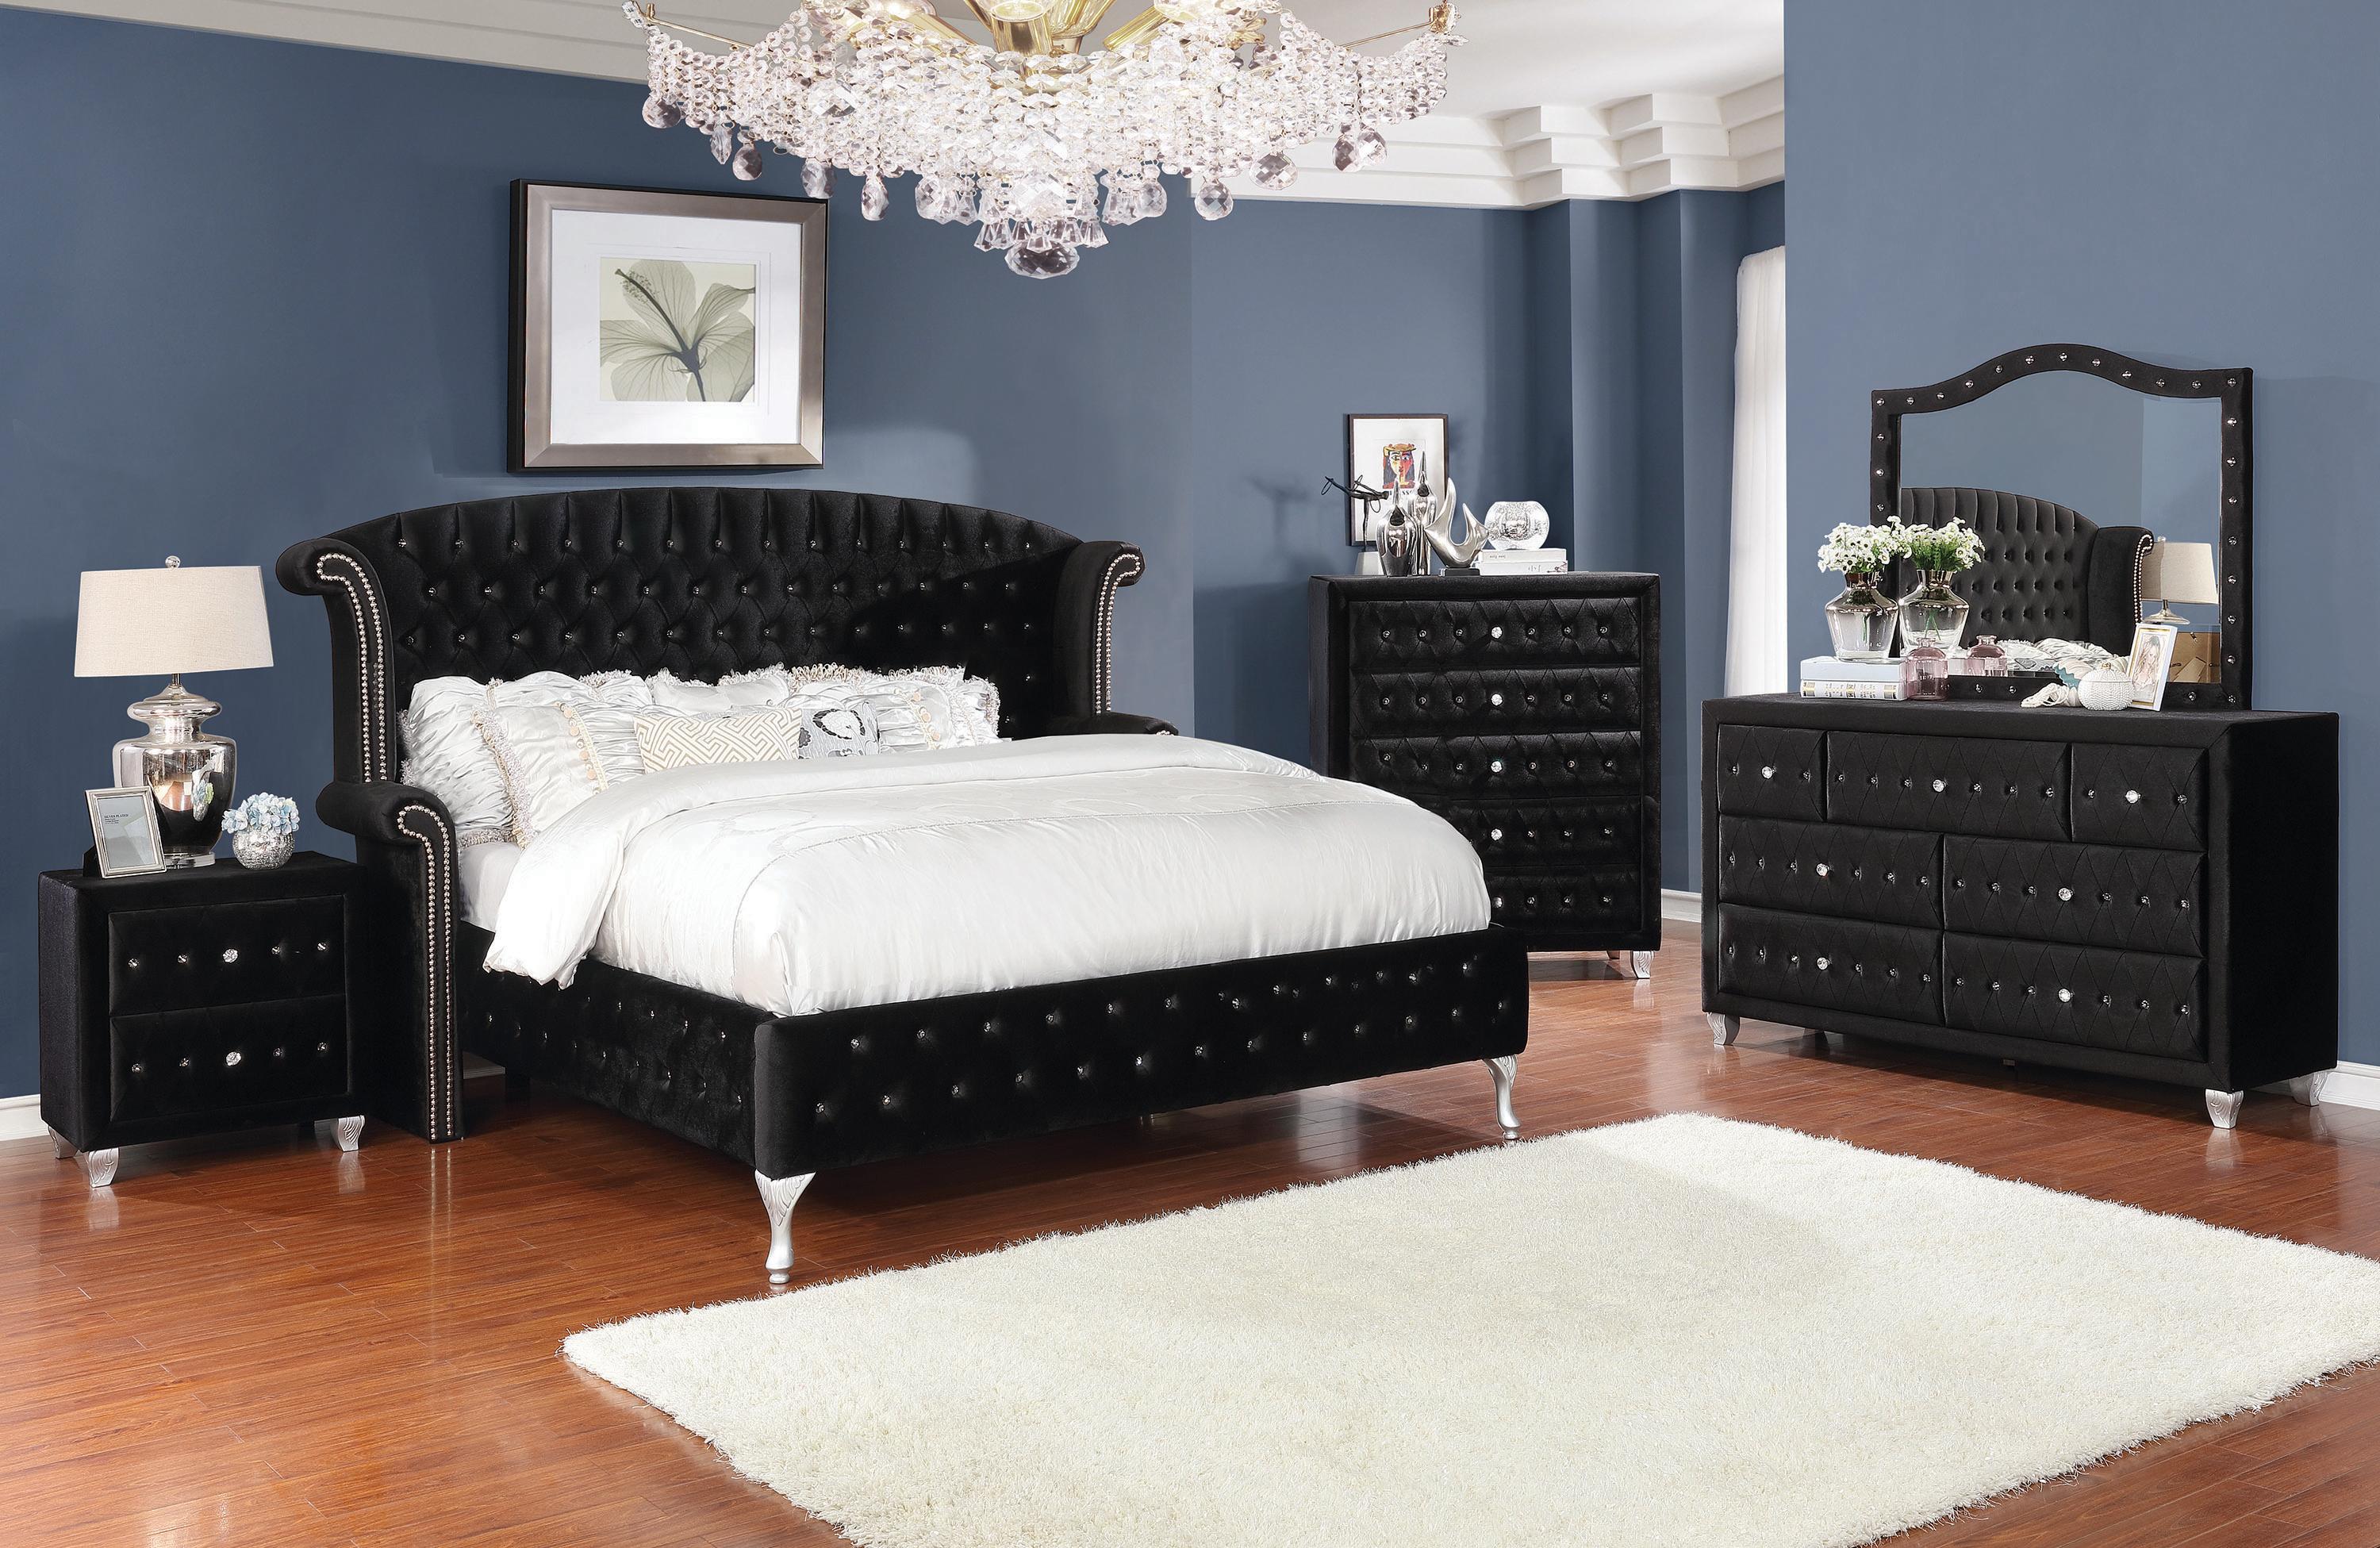 

    
Glam Black Velvet King Bedroom Set 5pcs Coaster 206101KE Deanna
